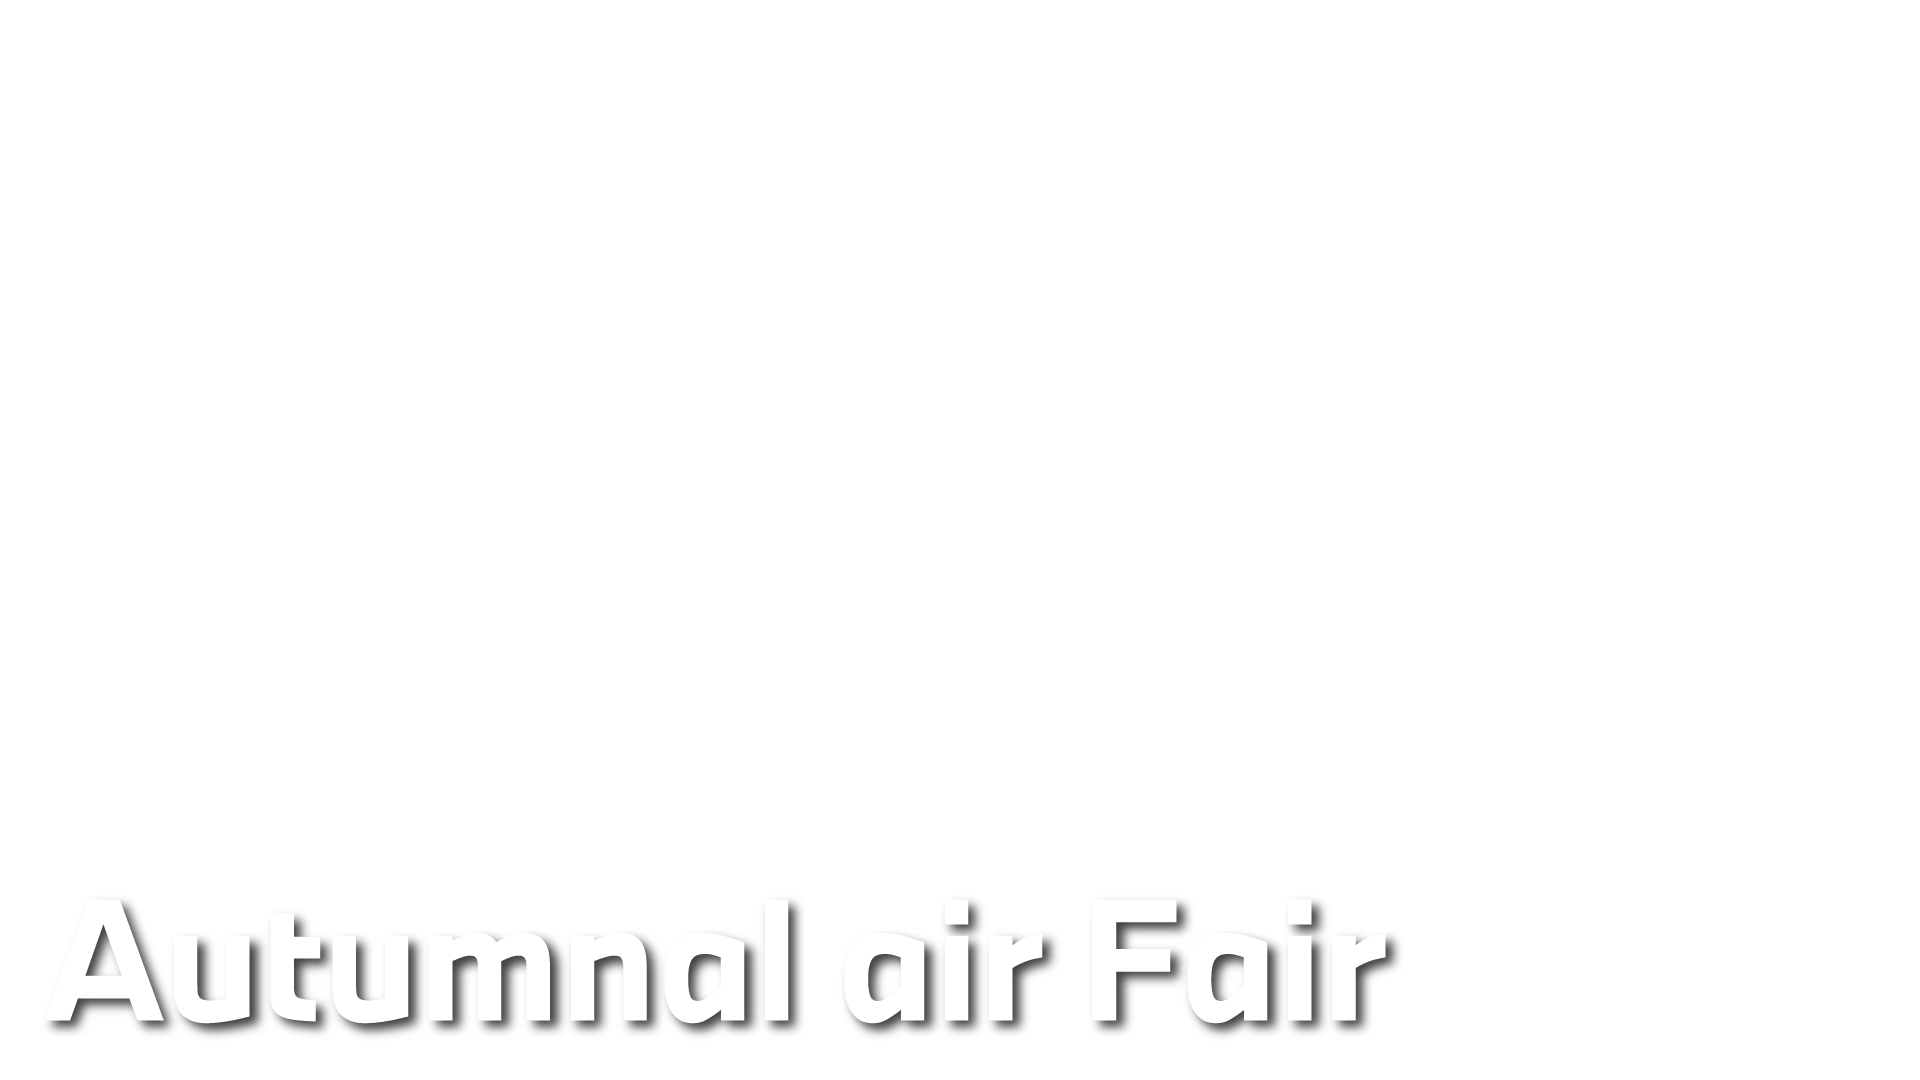 Autumnal air Fair